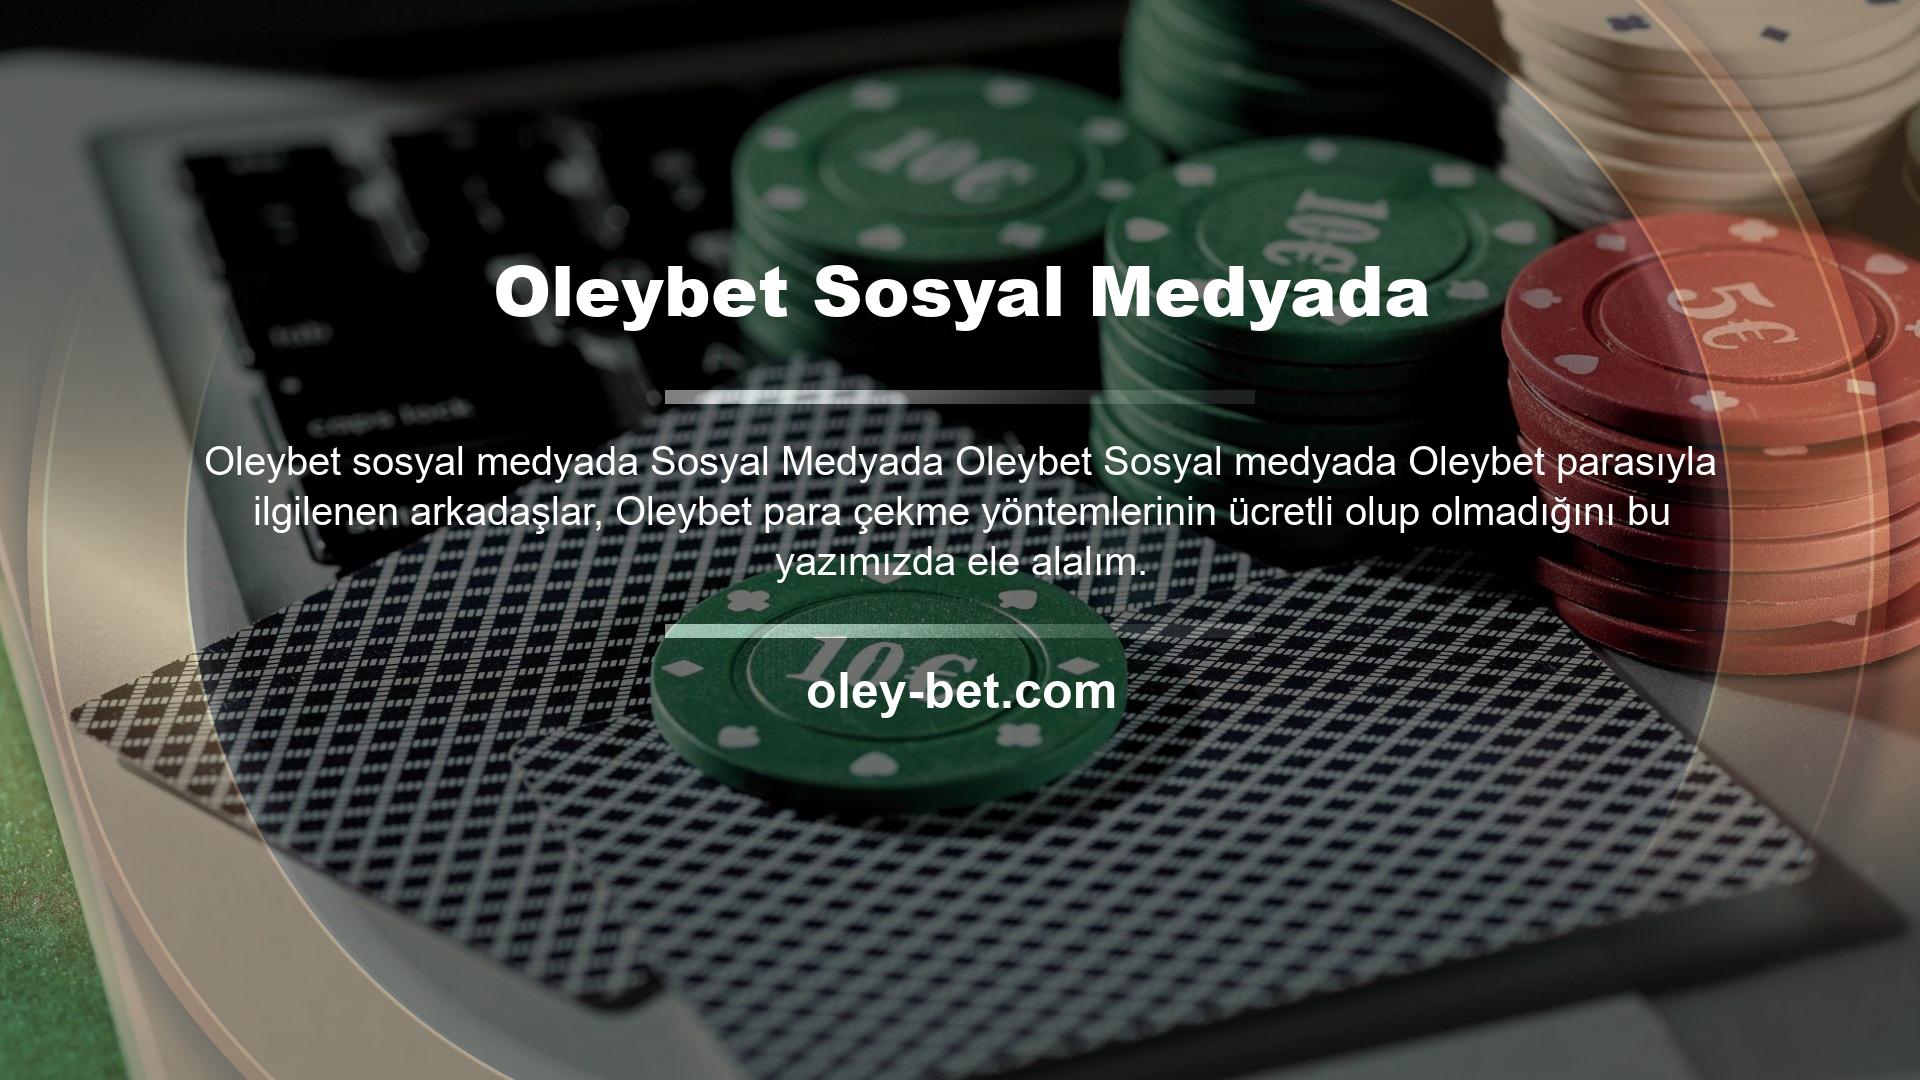 Oleybet web sitesi en güvenilir ve kaliteli bahisçilerden biridir ve her zaman müşterinin ilgisini çekicilikle karşılar